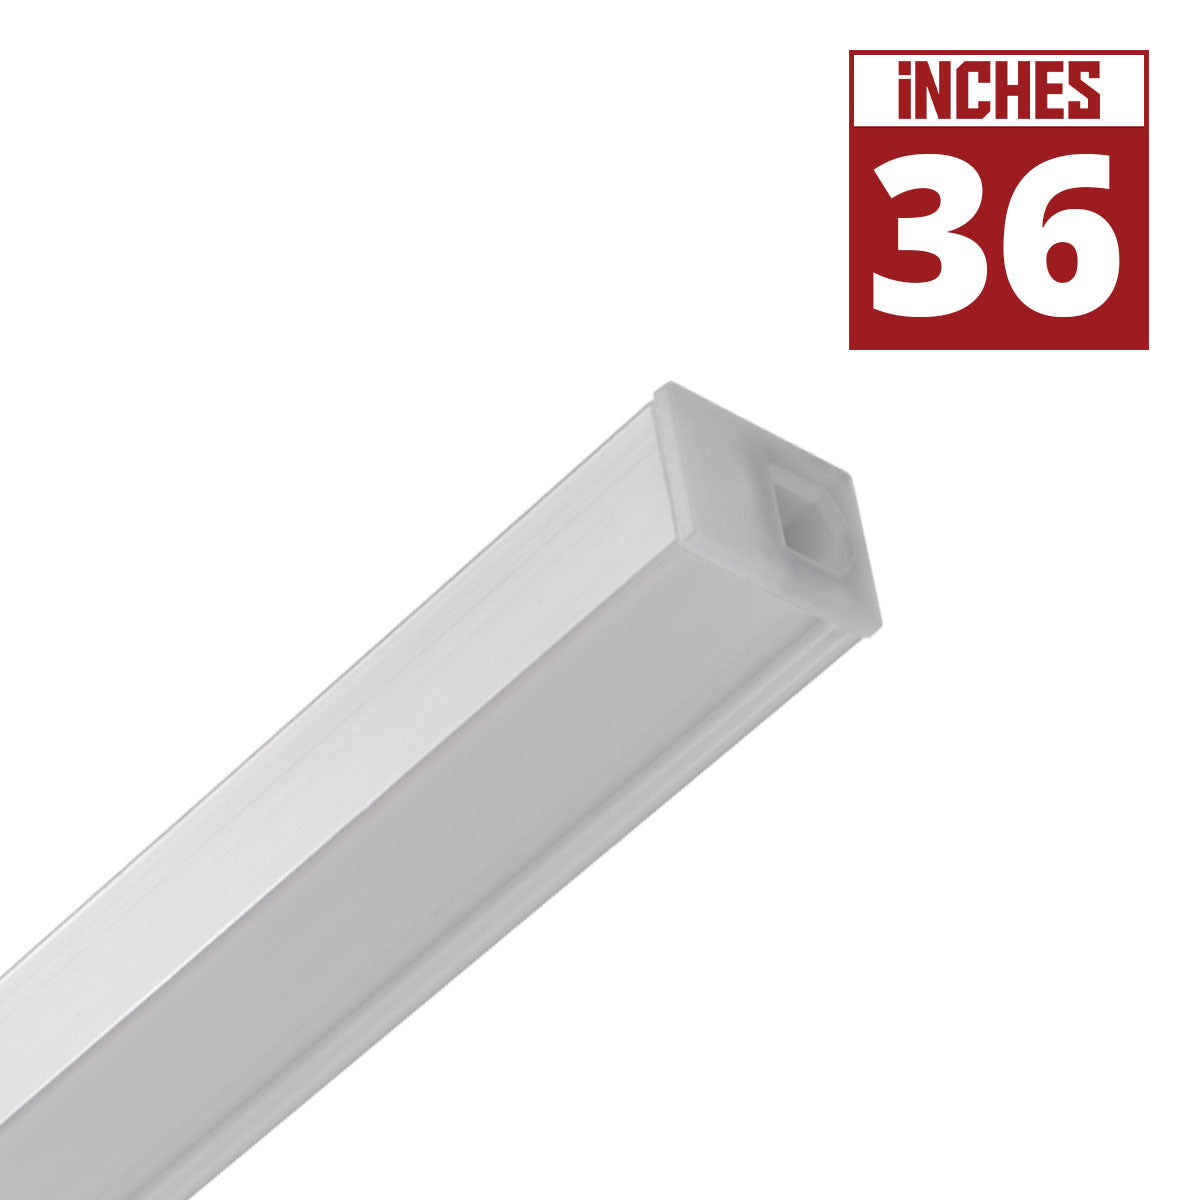 Microlink 36 Inch LED Under Cabinet Lighting, 859 Lumens, 3000K, 120V